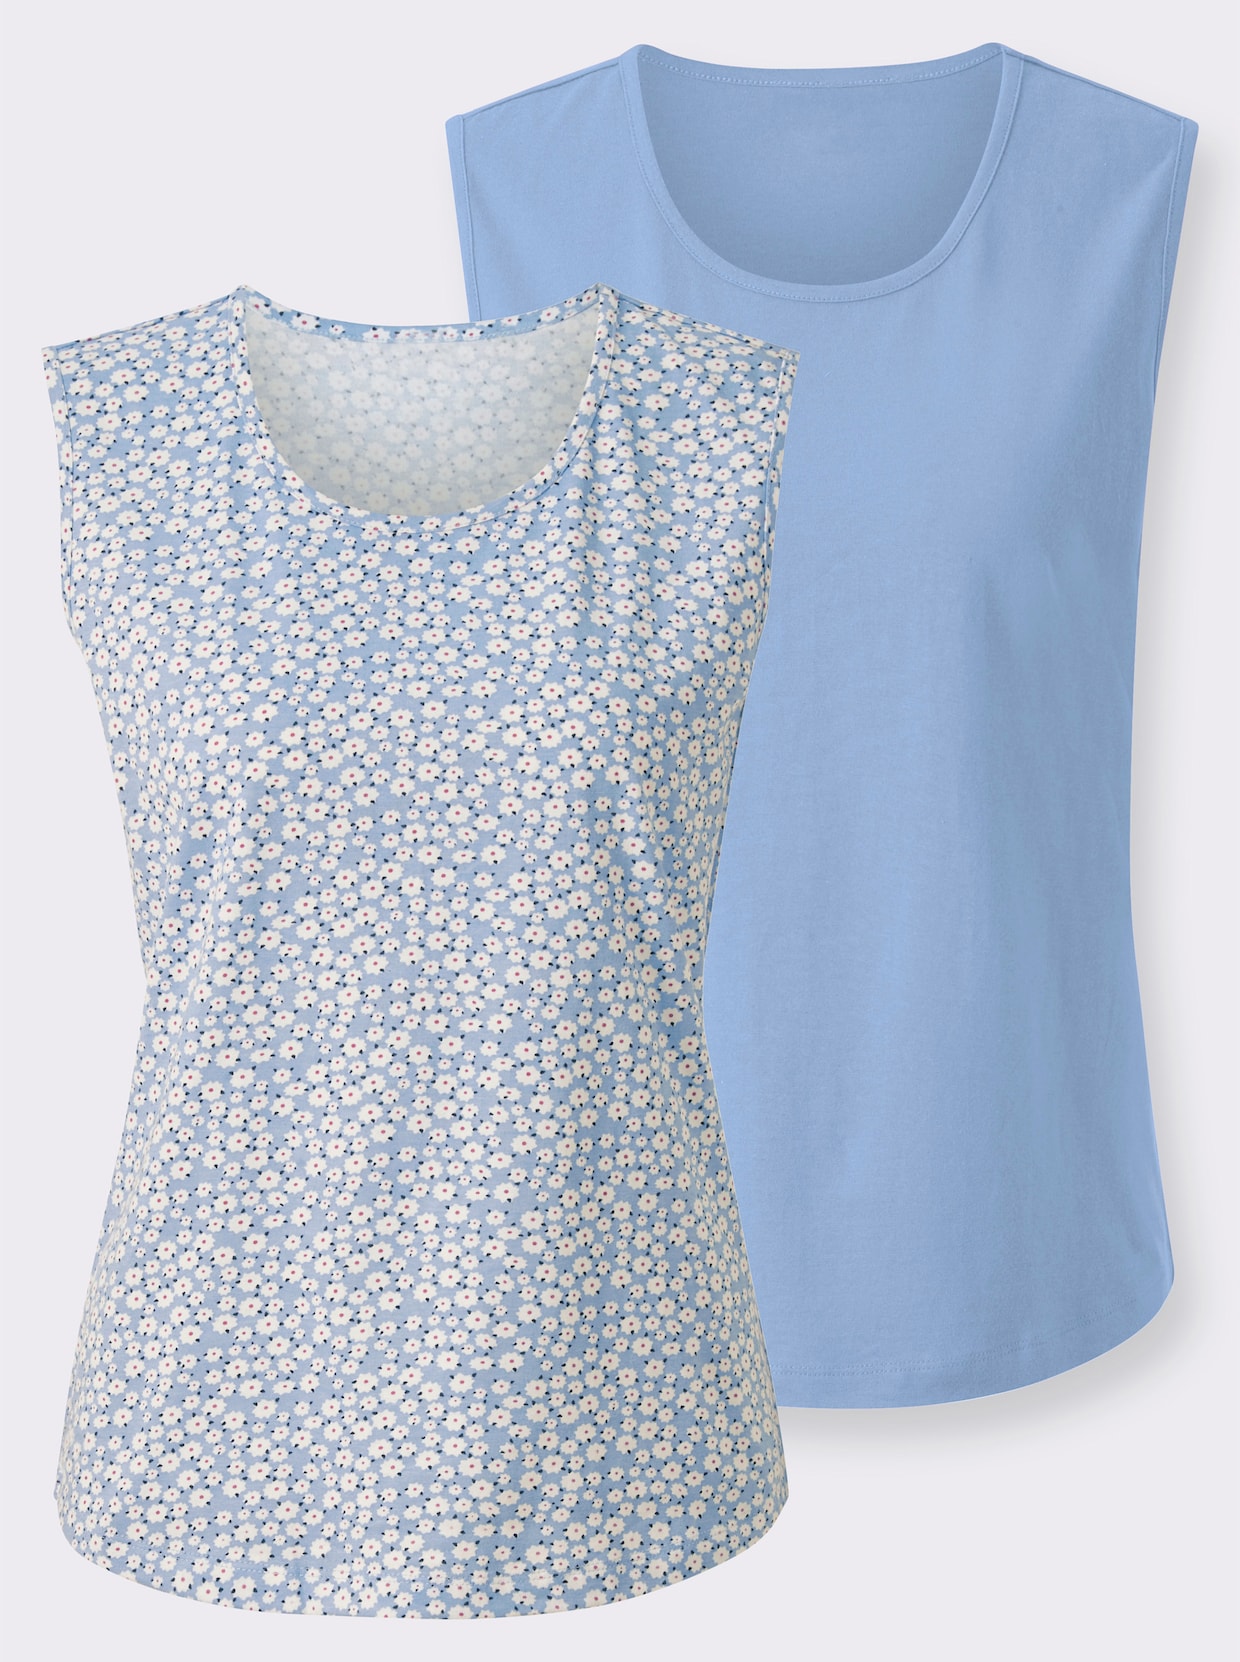 Shirttop - himmelblau + himmelblau-weiß-bedruckt